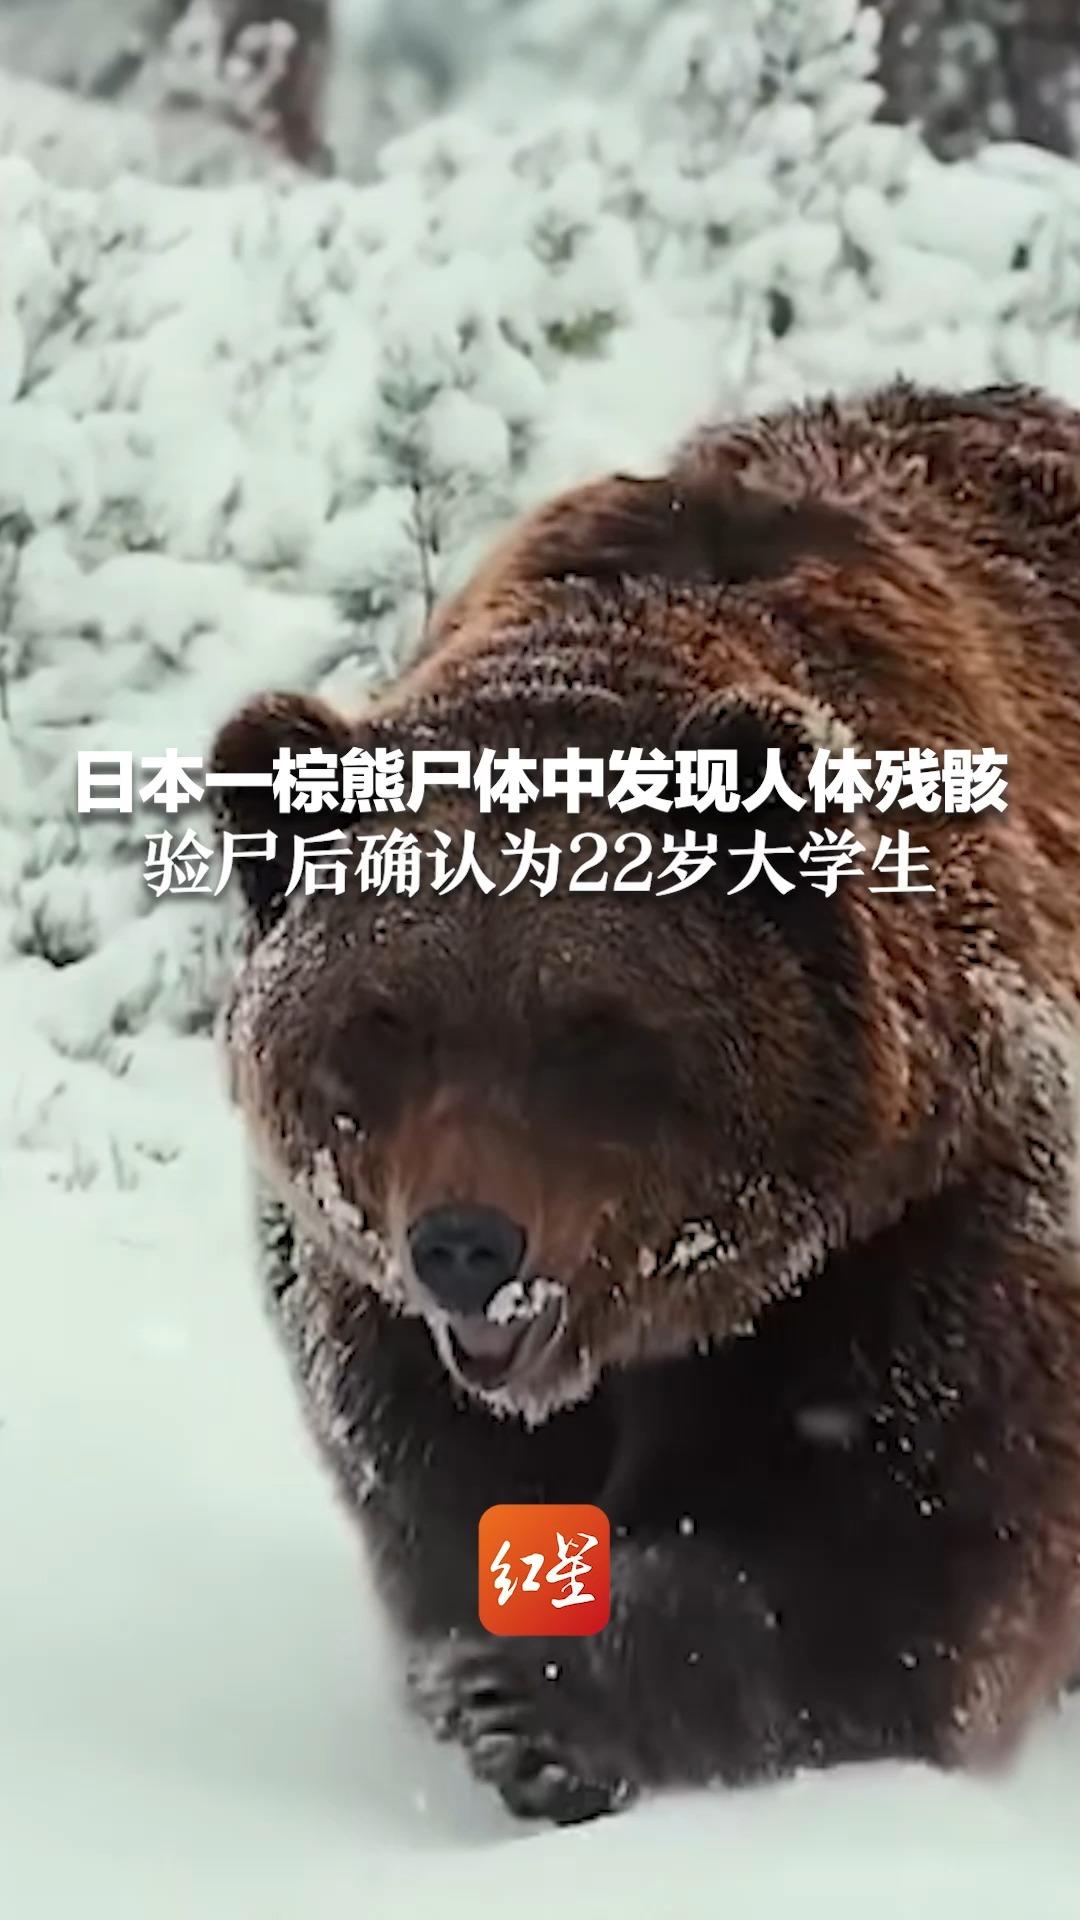 日本一棕熊尸体中发现人体残骸 验尸后确认为22岁大学生